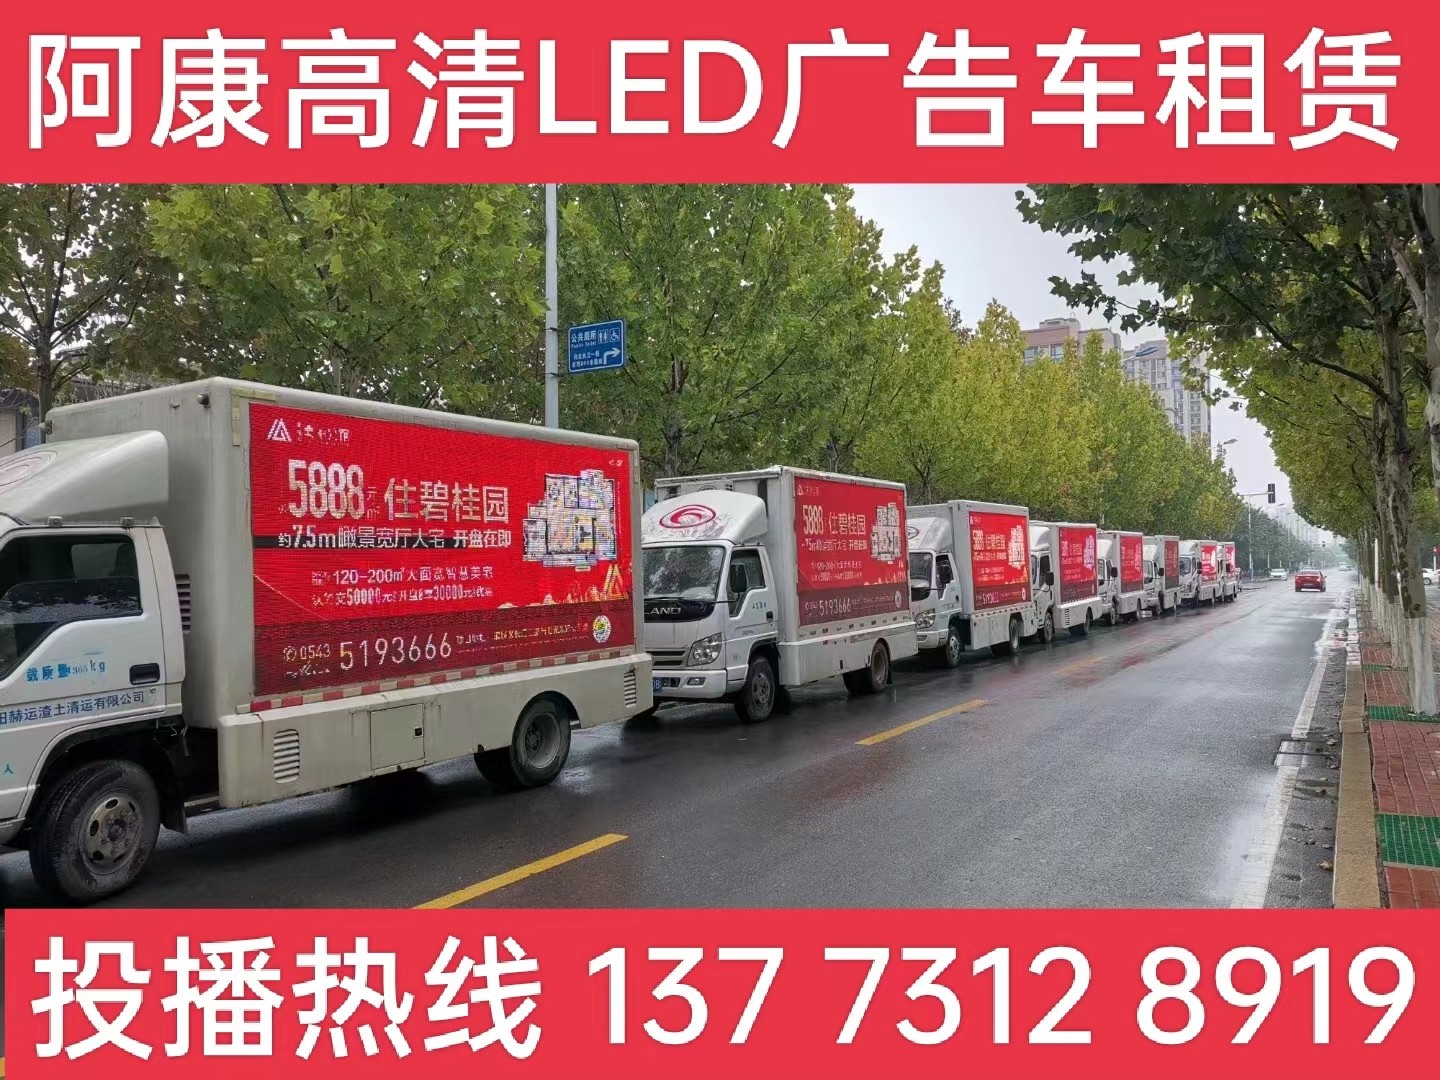 泰州宣传车租赁公司-楼盘LED广告车投放